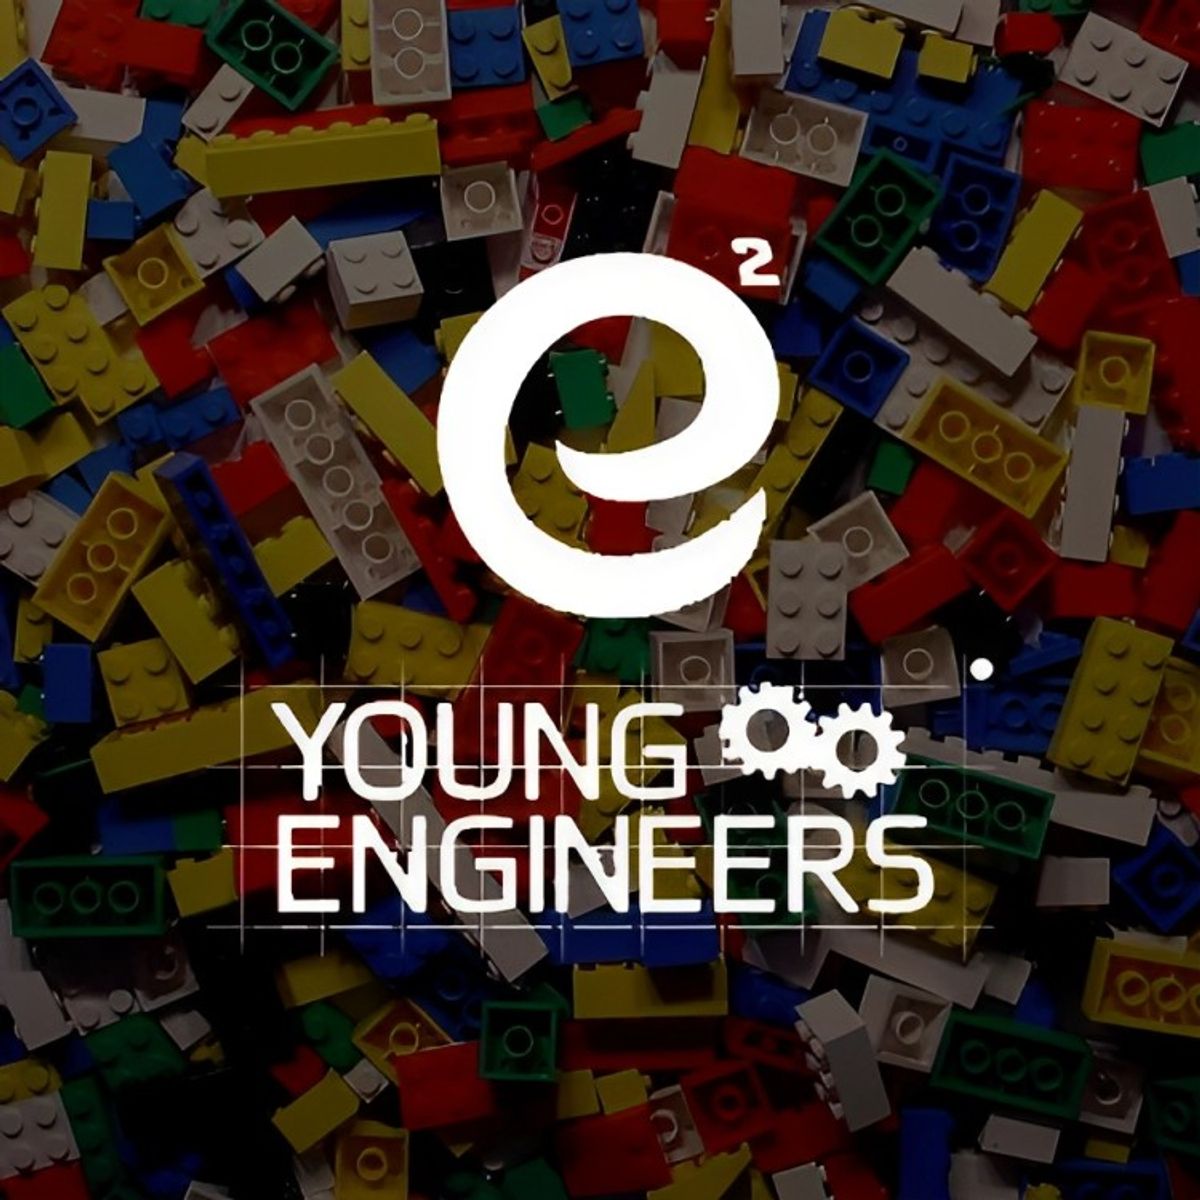 Хүүхдийн анхаарал төвлөрөлтийг сайжруулж бүтээлч сэтгэхгүйг нь нэмэгдүүлэх "Young Engineer STEM" хөтөлбөрийг хэрэгжүүлж буй "Young Engineer" байгууллага манай Msports app-т нэгдлээ.